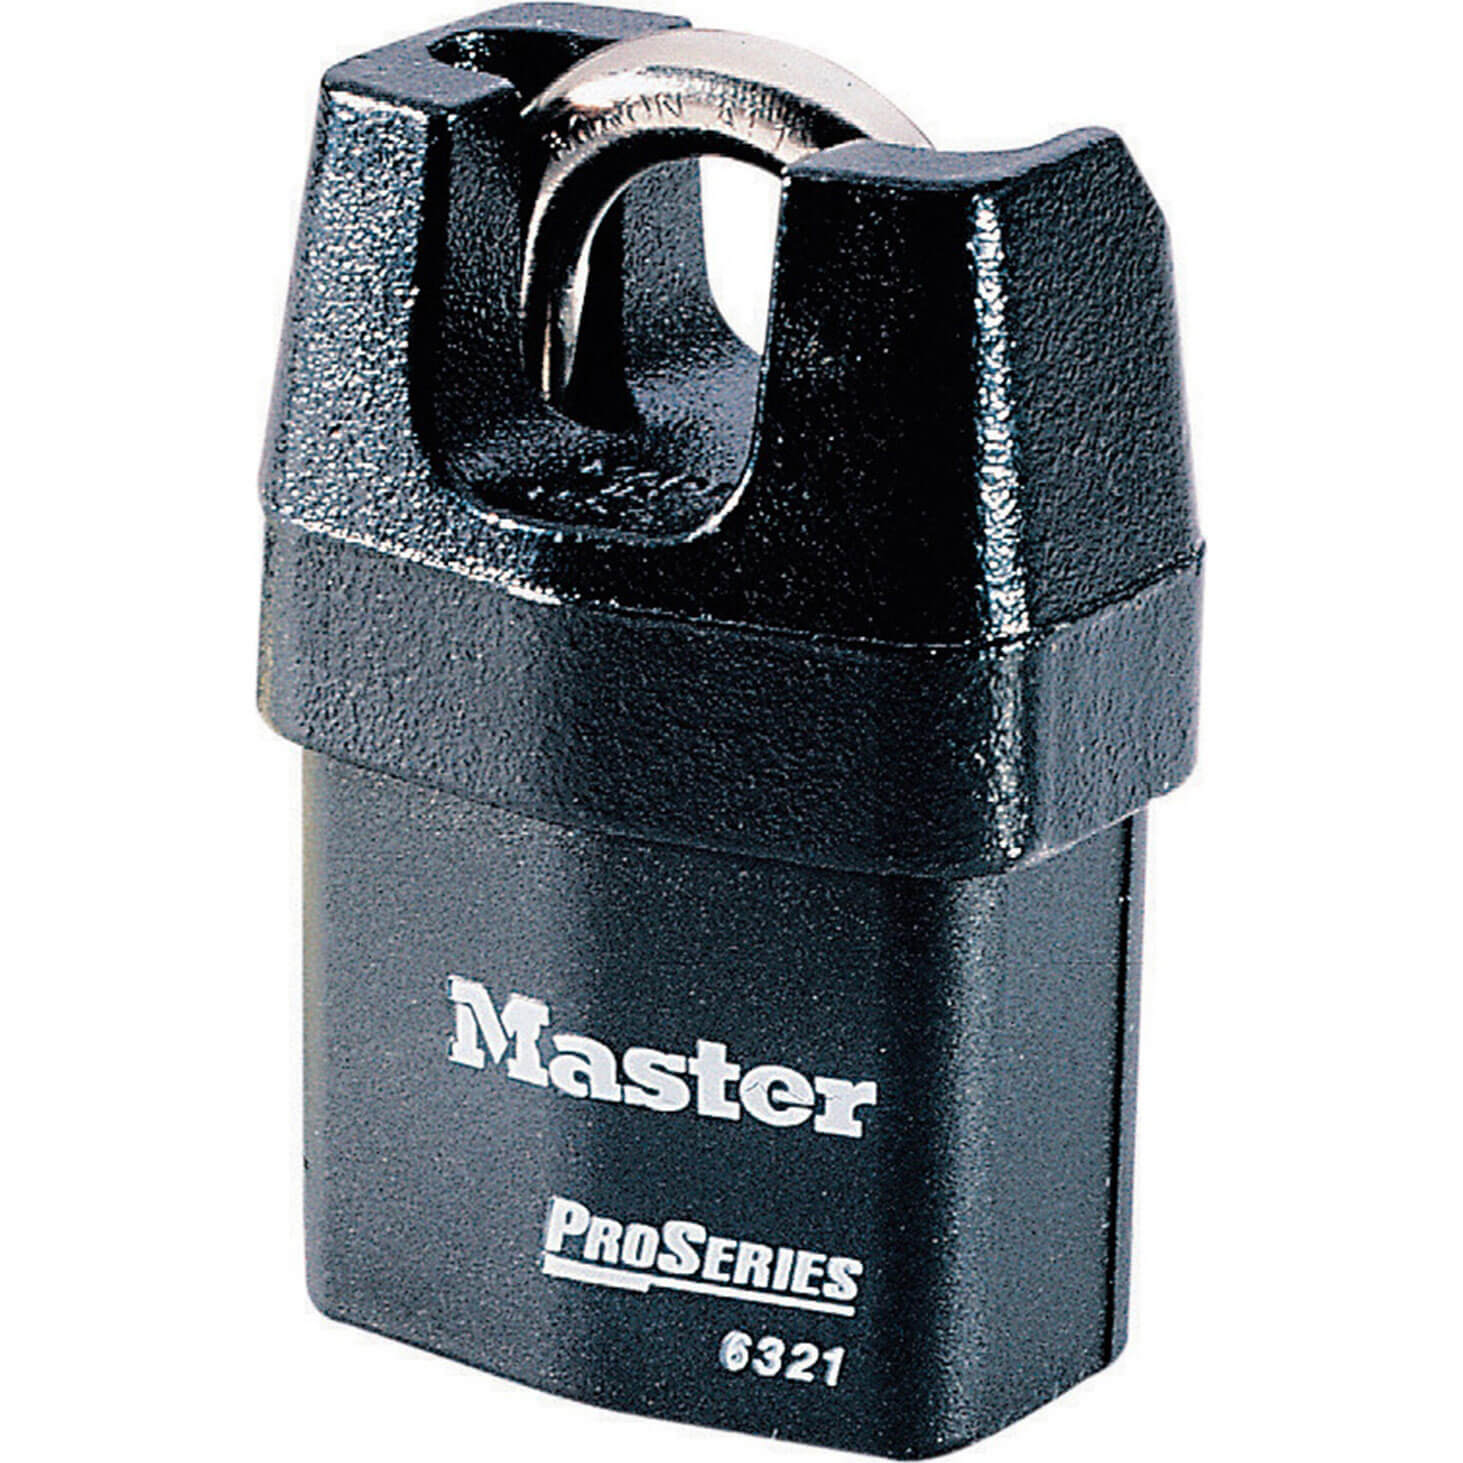 Image of Masterlock Pro Series Padlock Closed Shackle Keyed Alike 54mm Standard